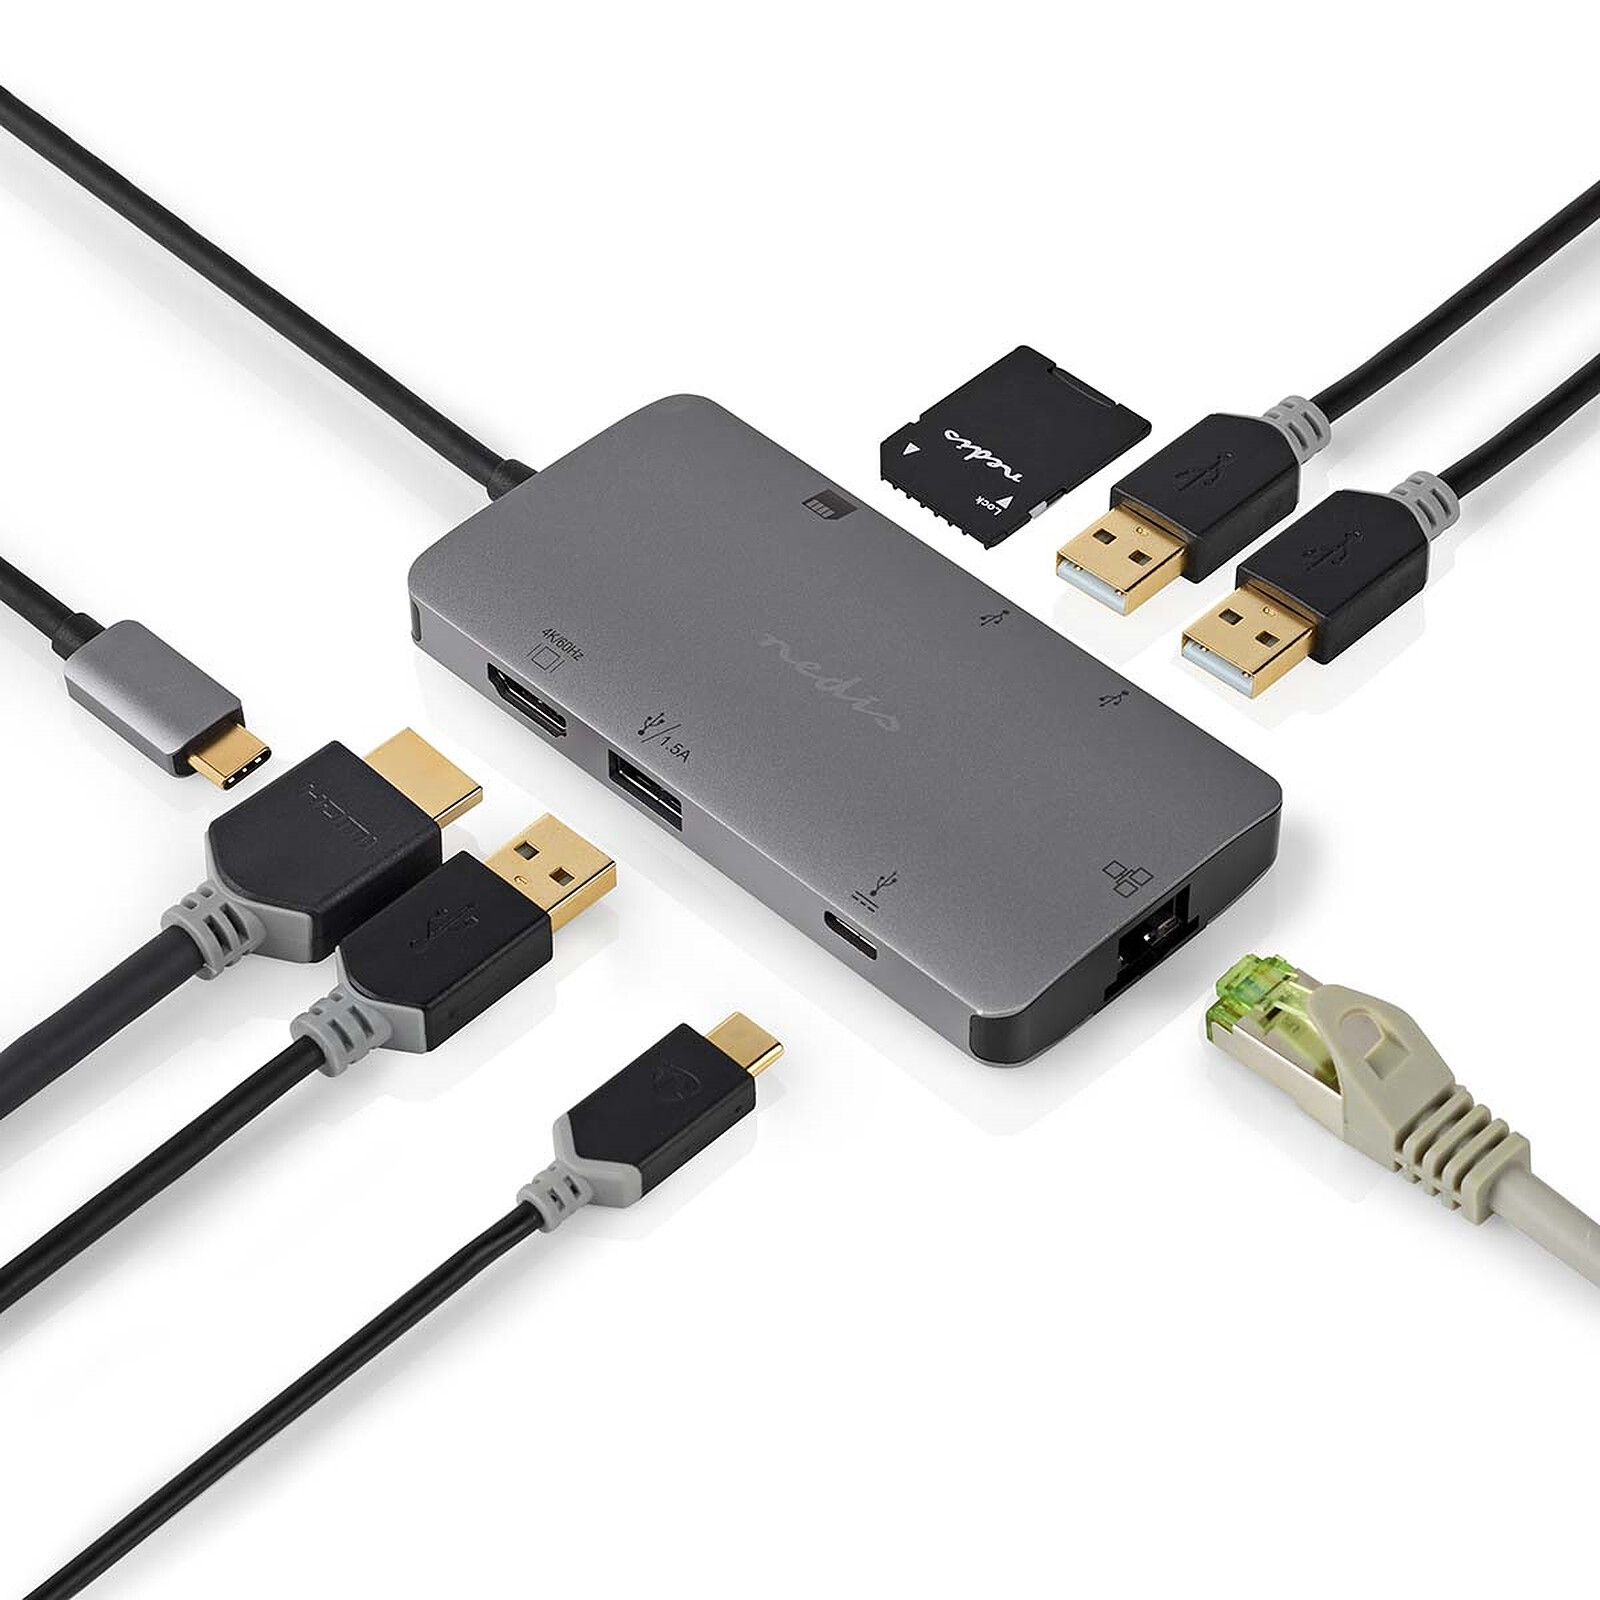 Hub multifonctions 7 en 1 (RJ45, HDMI, USB 3.0, USB 2.0, USB C